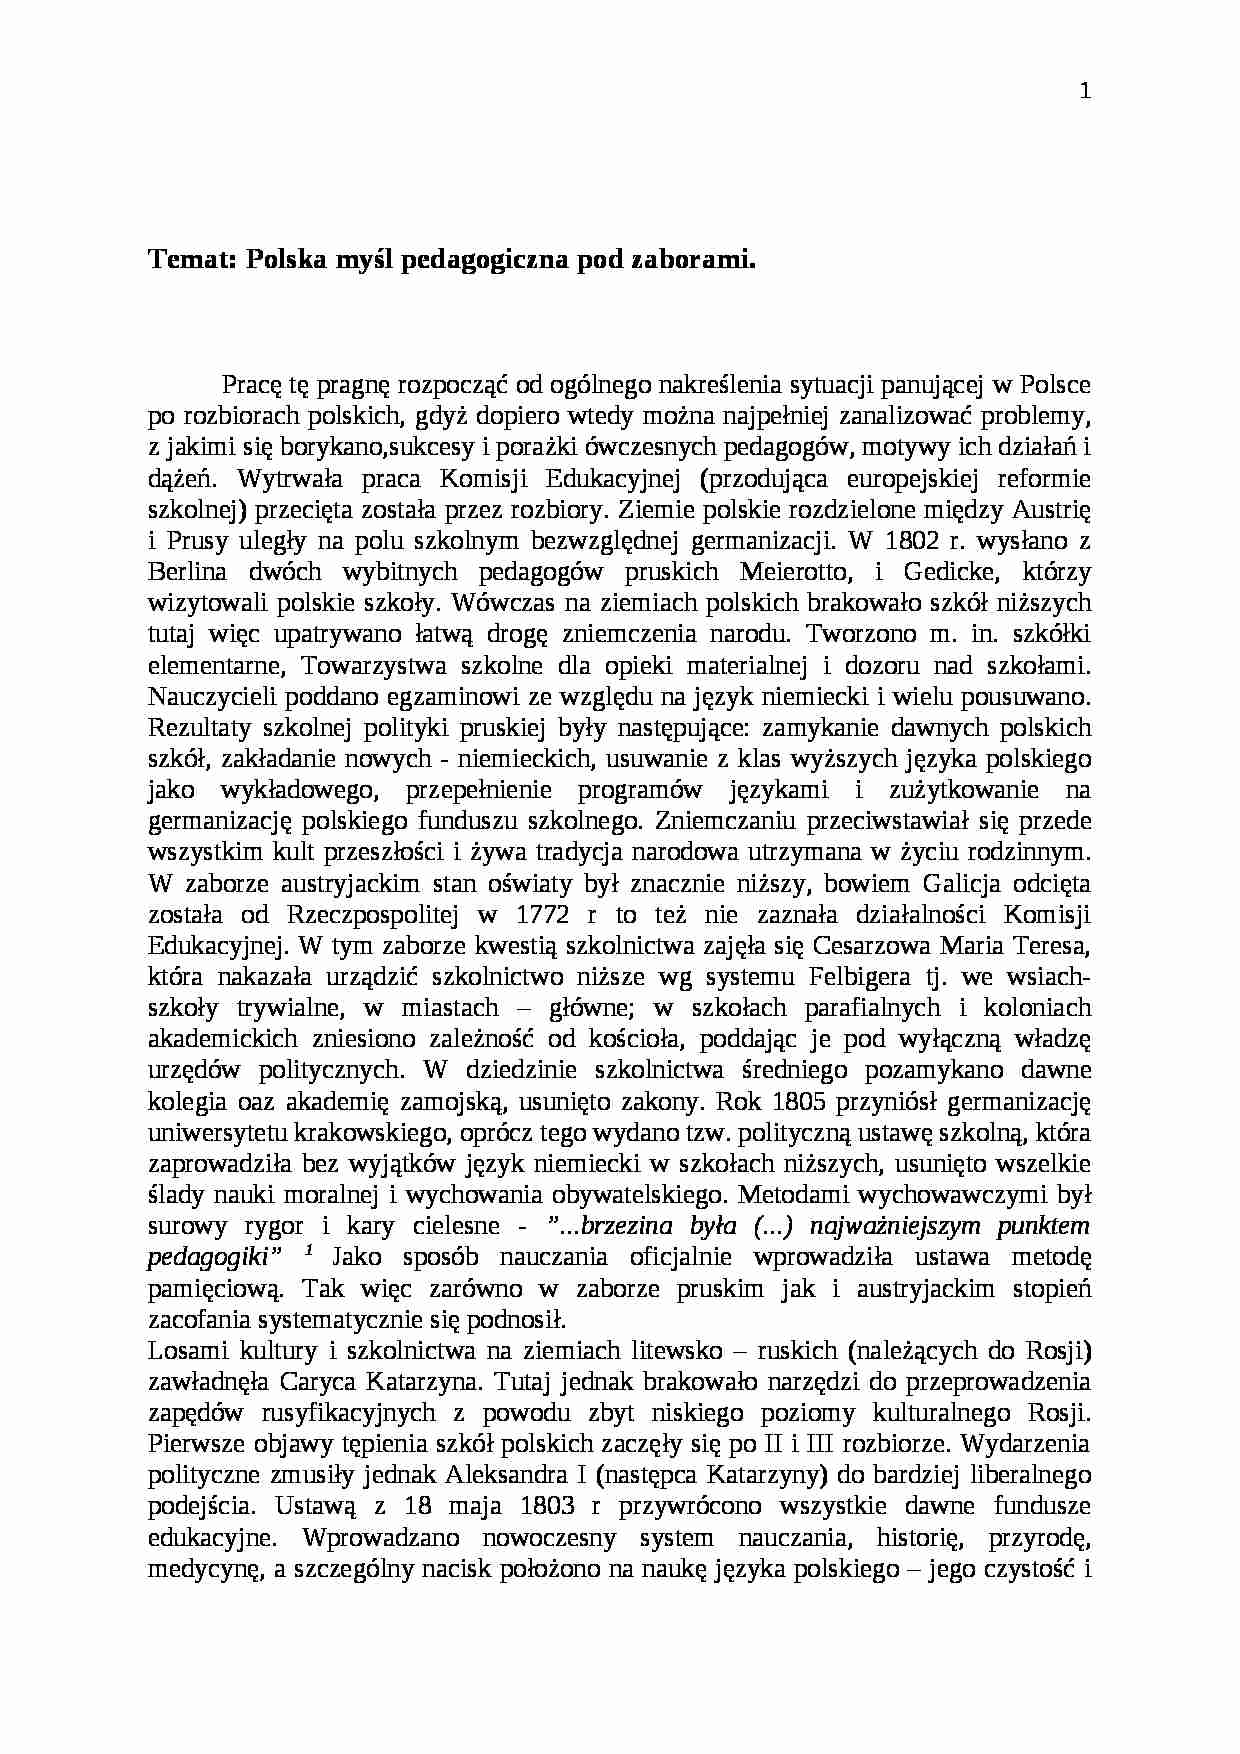 Polska myśl pedagogiczna pod zaborami- pedagogika - strona 1